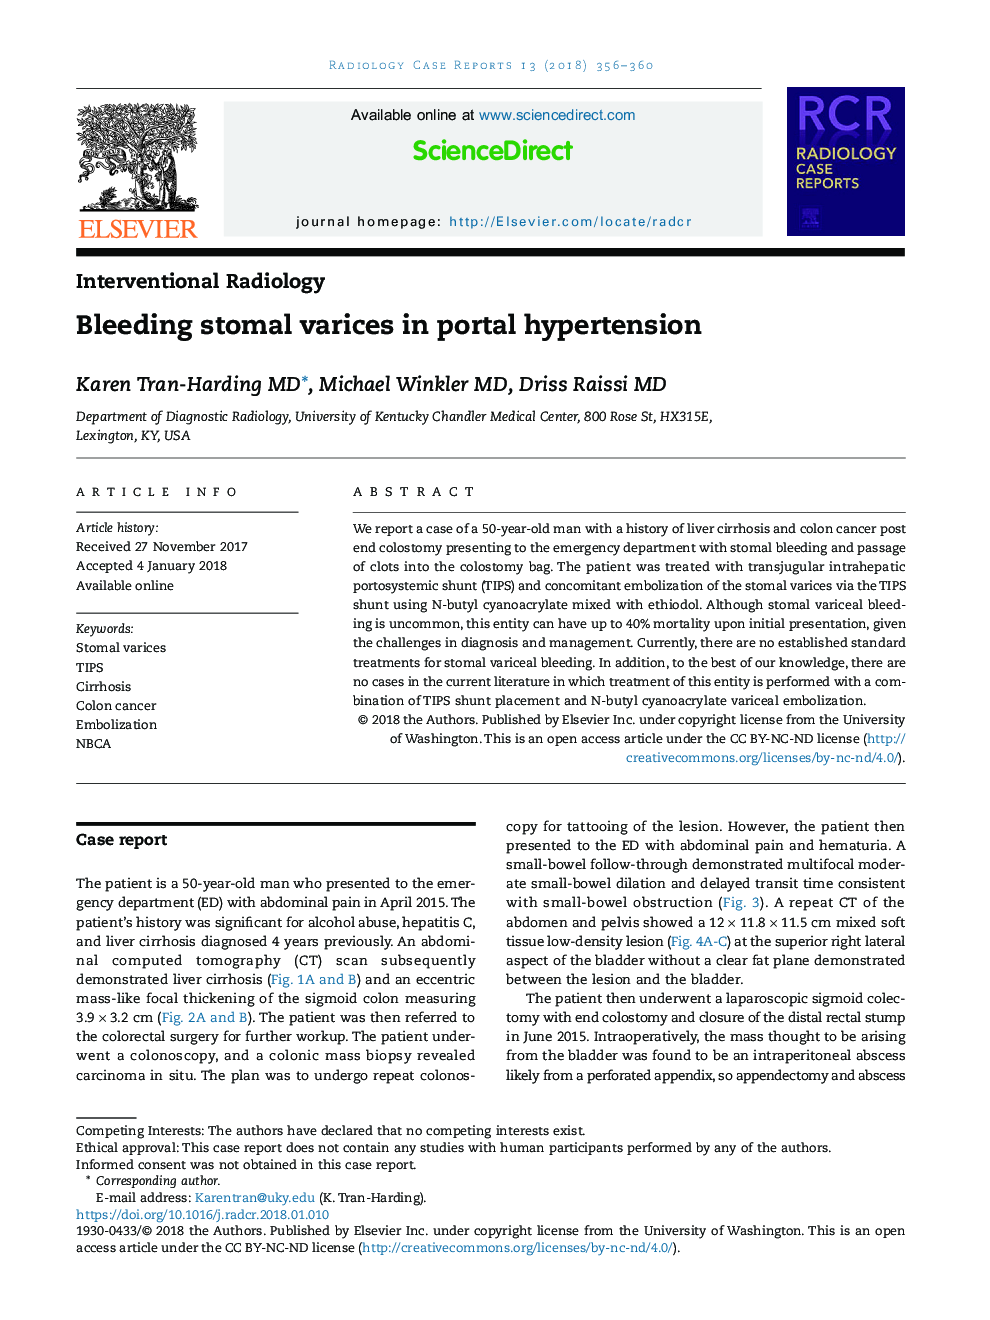 Bleeding stomal varices in portal hypertension